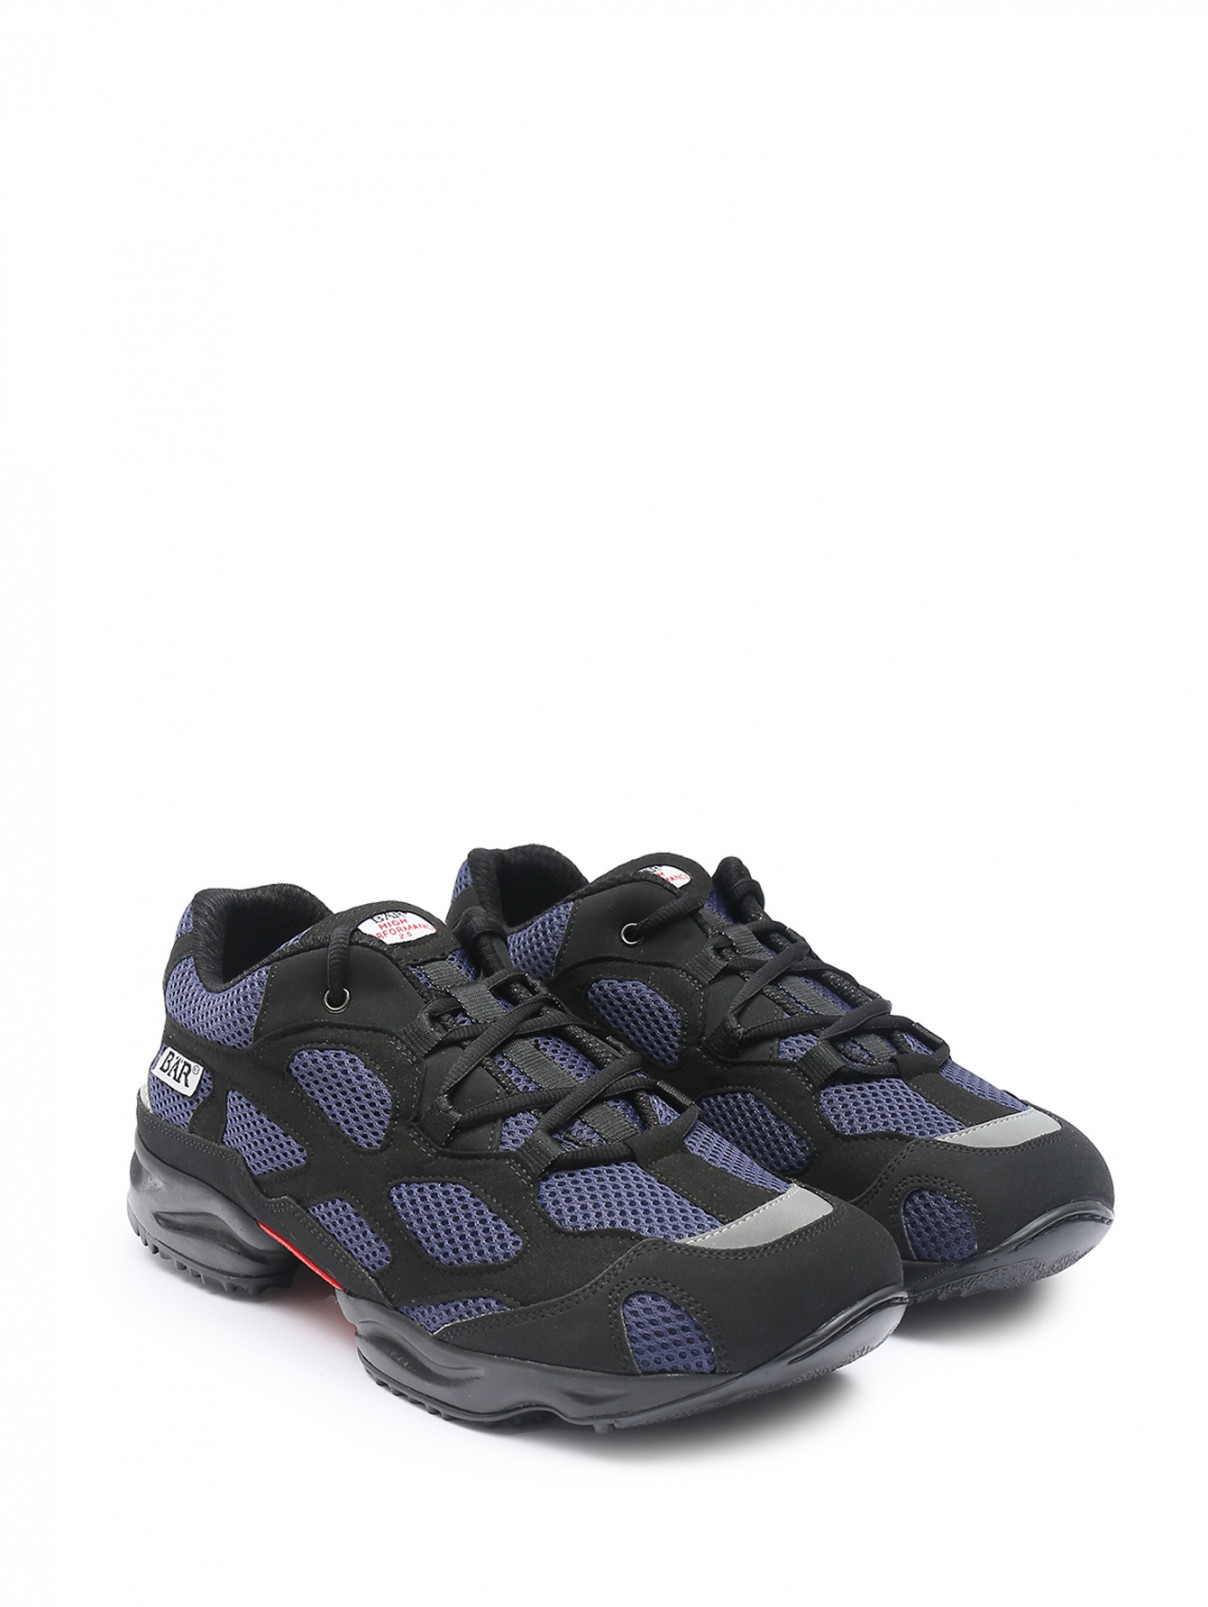 Комбинированные кроссовки на шнурках BAER  –  Общий вид  – Цвет:  Черный